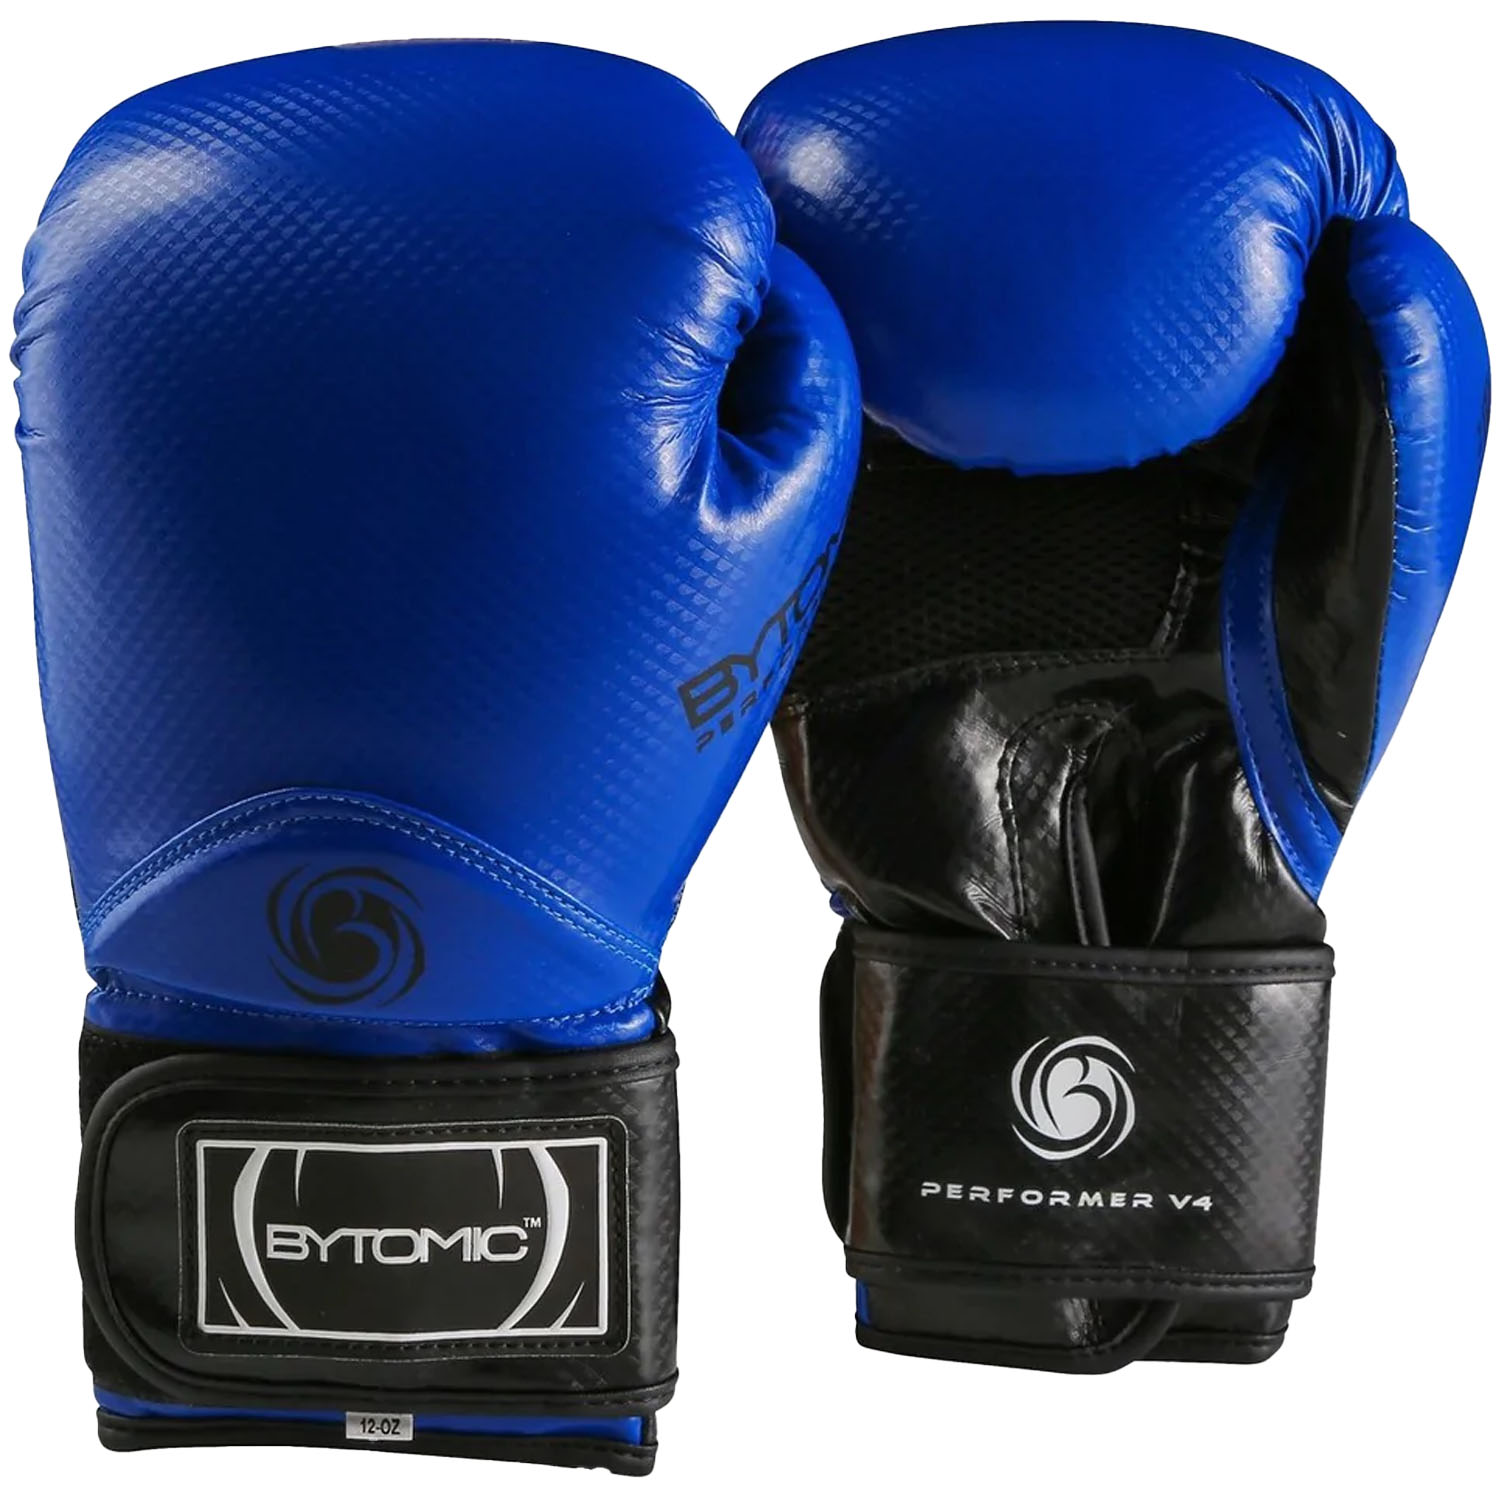 Bytomic Boxing Gloves, Performer, V4, blue, 12 Oz